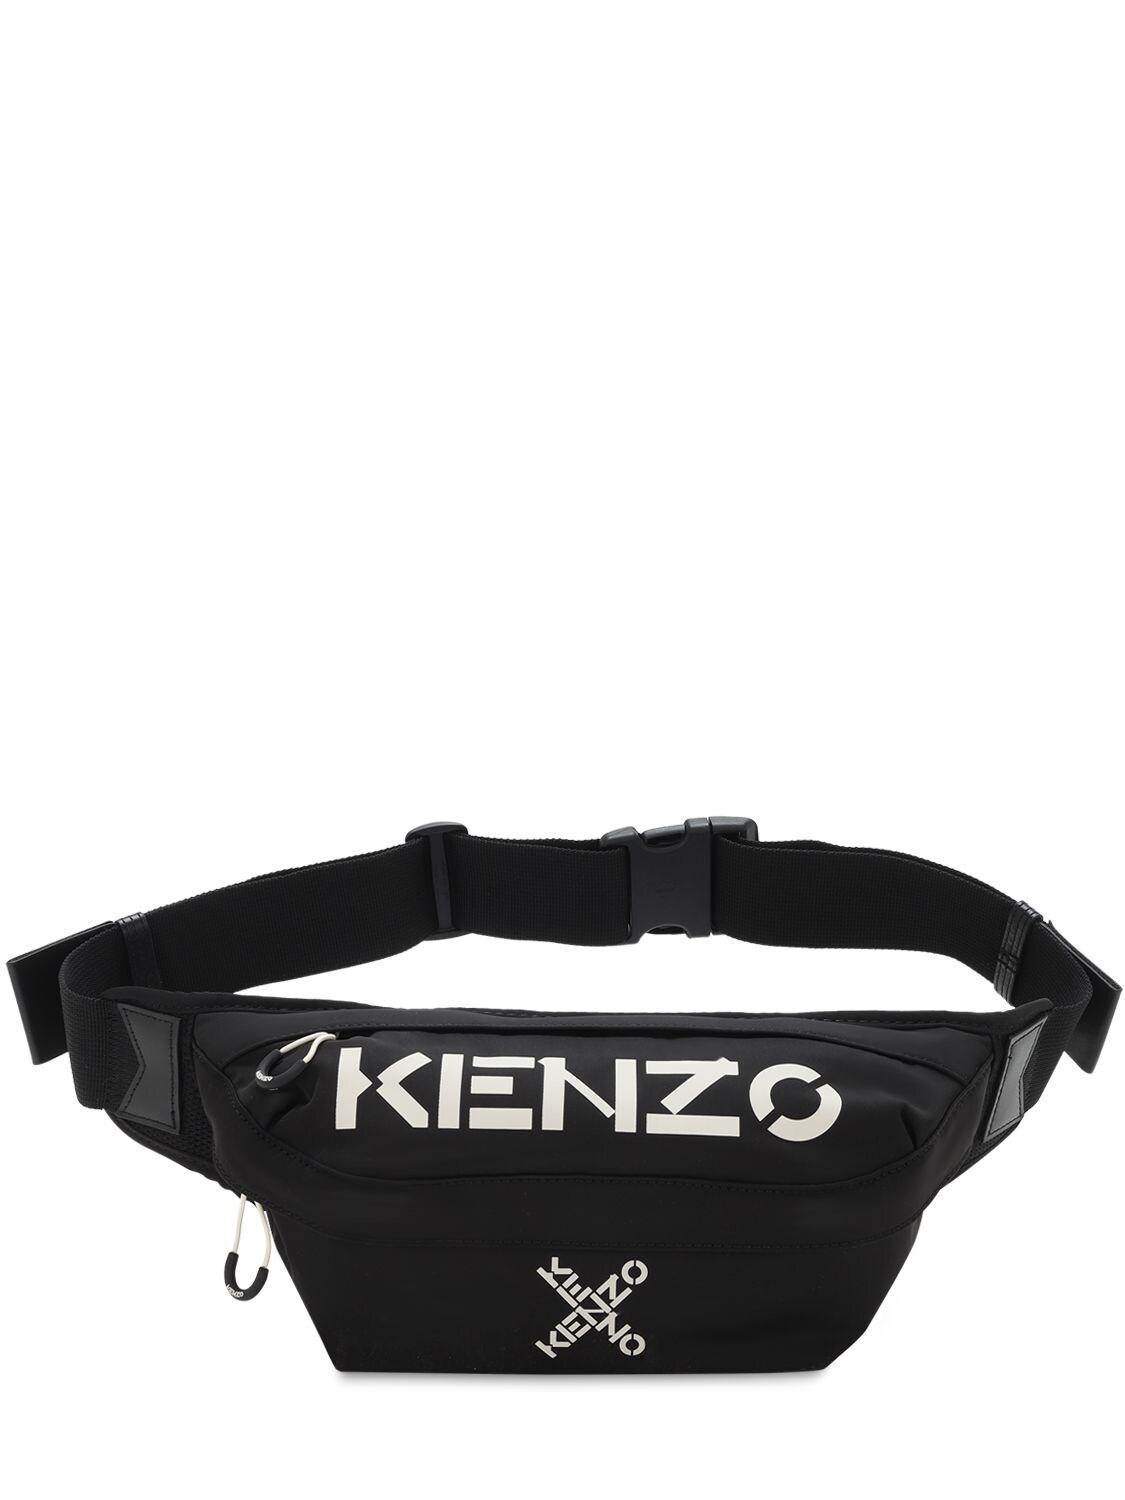 KENZO Synthetic Logo Printed Nylon Belt Bag in Black for Men - Lyst